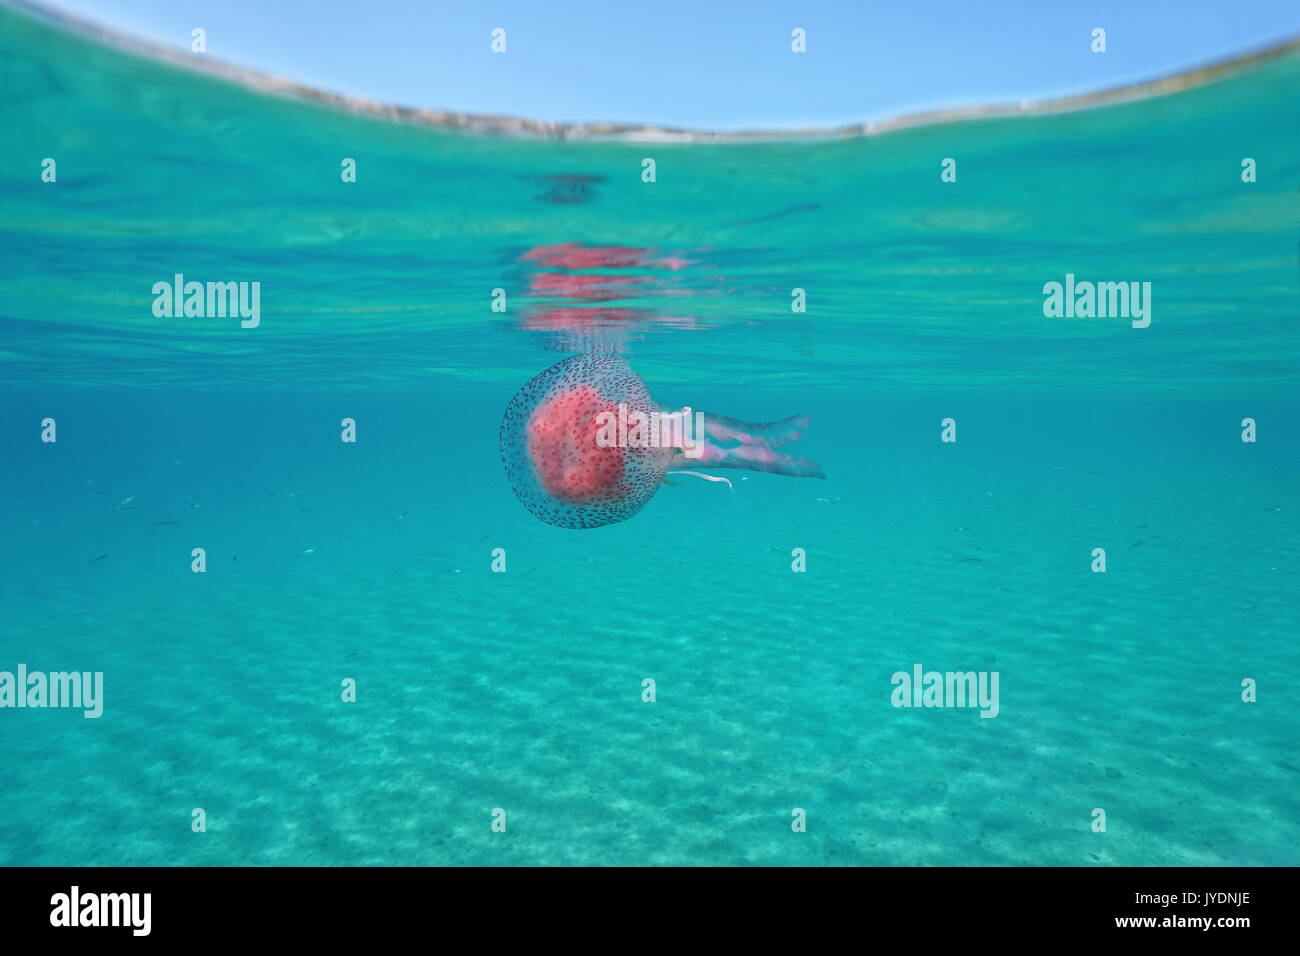 Un mauve stinger meduse Pelagia noctiluca underwater al di sotto della superficie dell'acqua, mare Mediterraneo, spagna Costa Brava, Girona, Catalogna Foto Stock